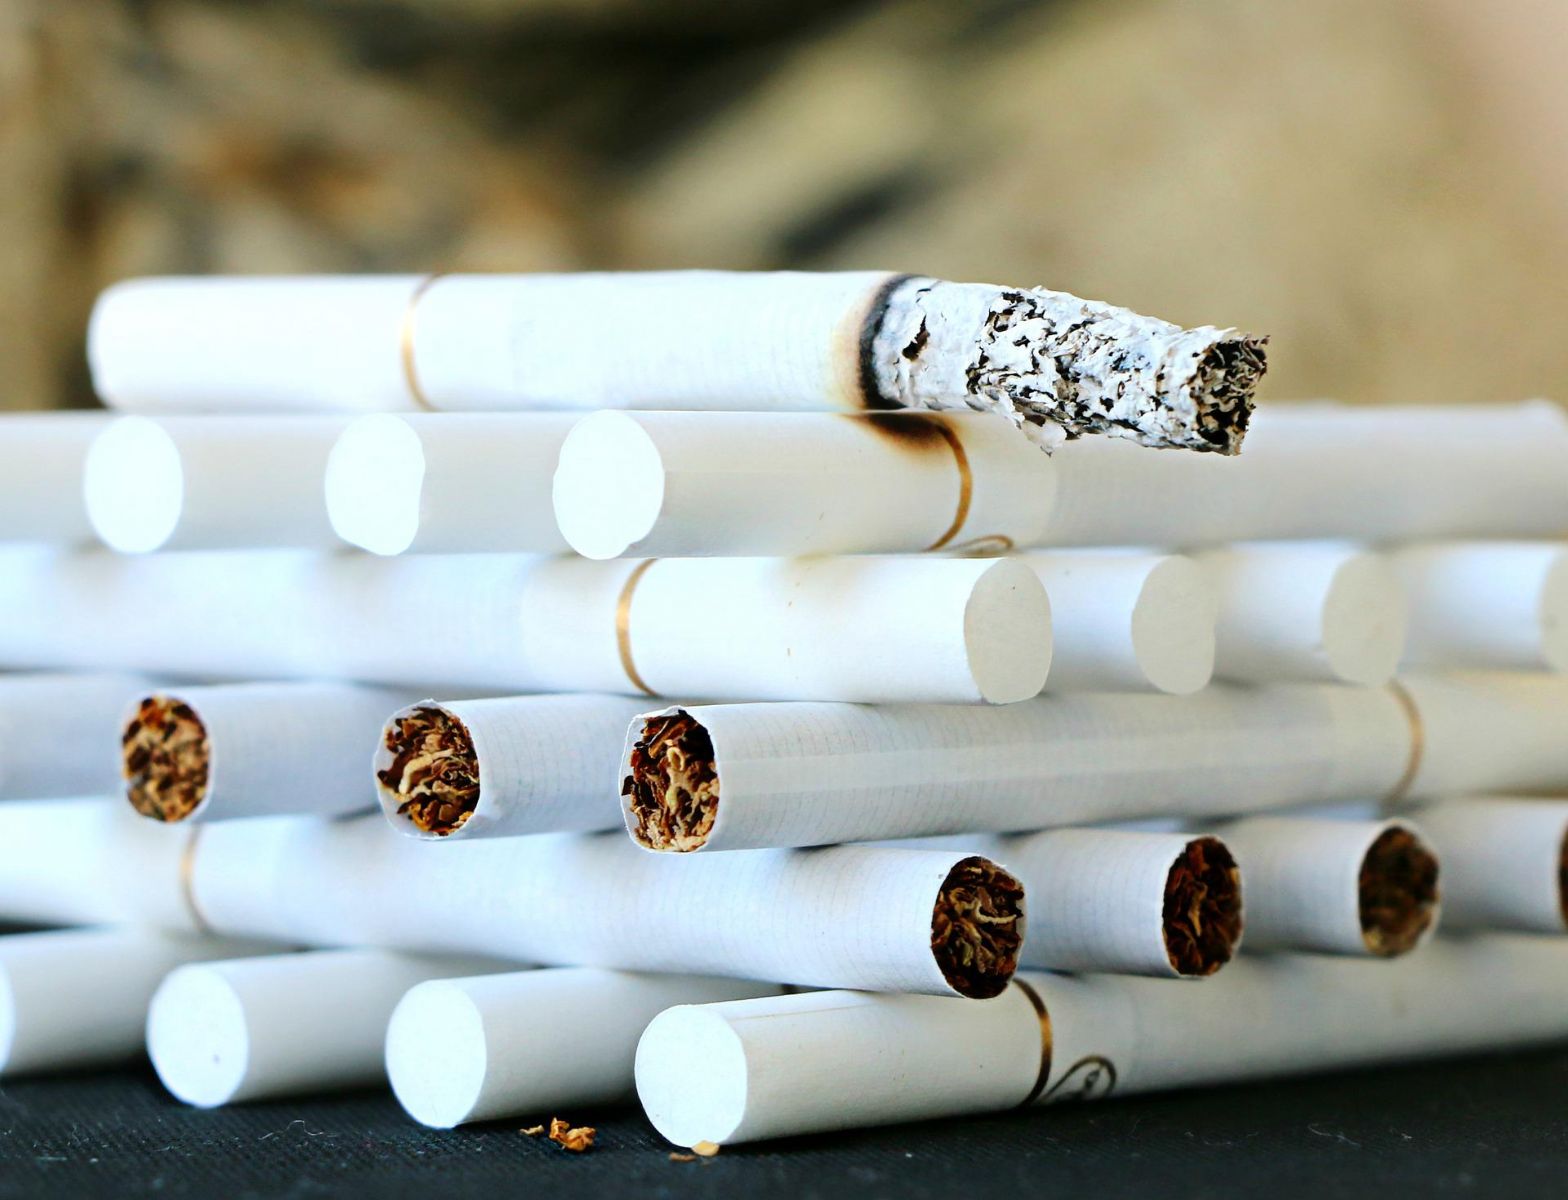 Karlovarsko: Cigarety nebyly označené pro daňové účely